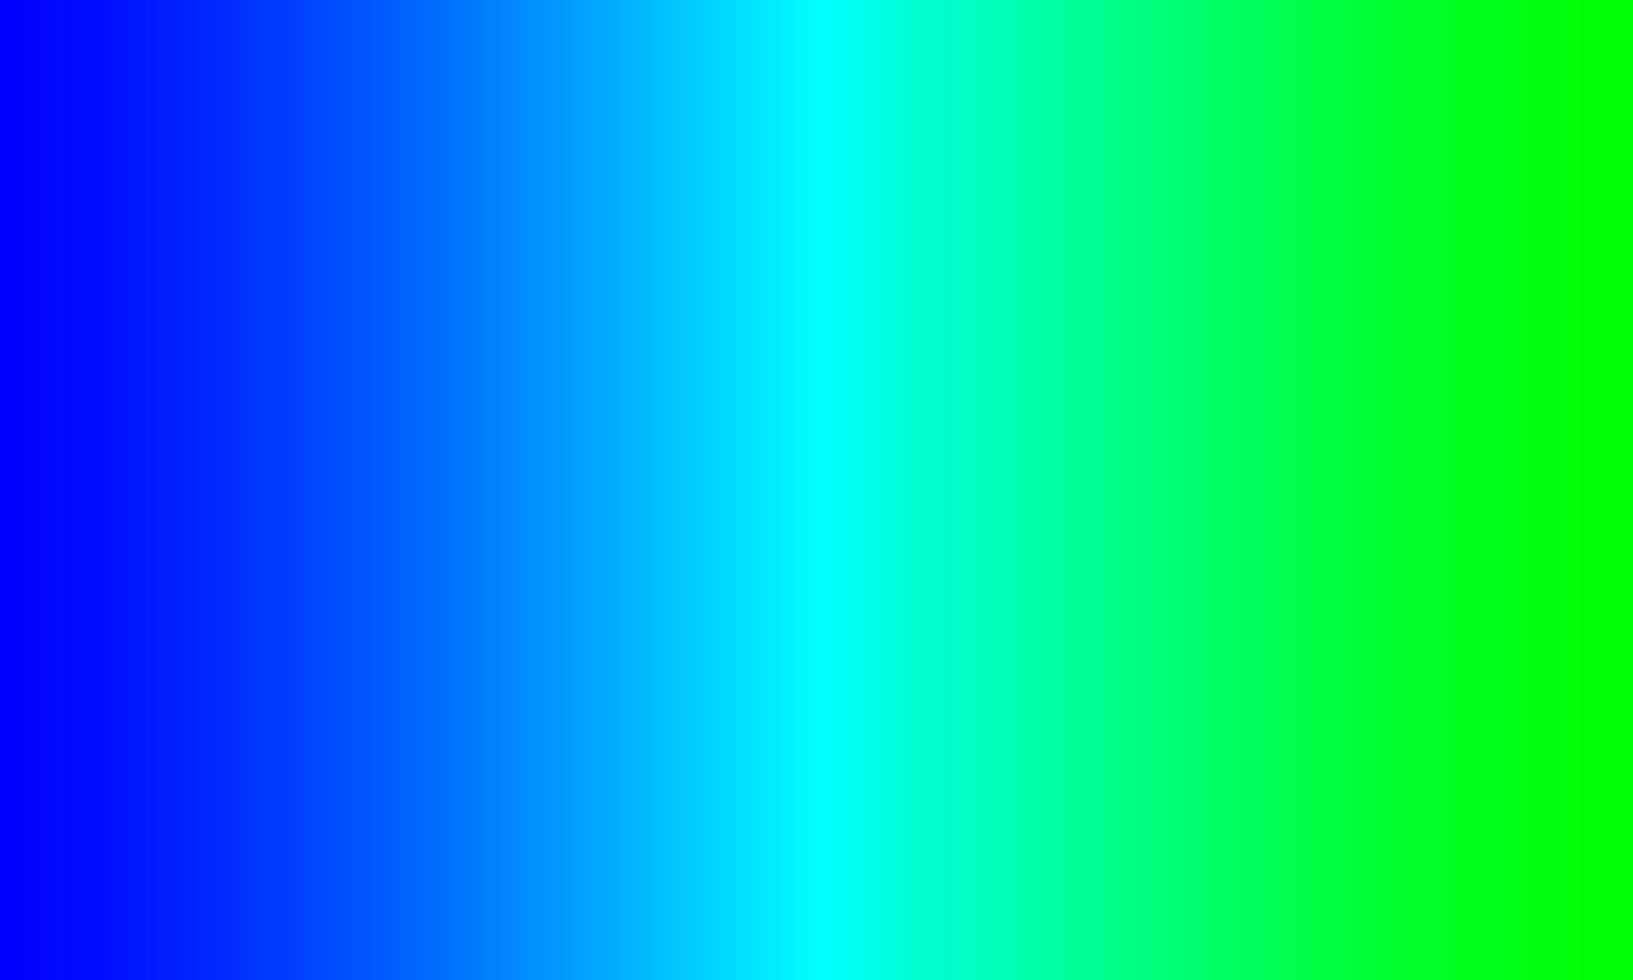 blauer, pastellblauer und grüner Farbverlauf. abstrakt, leer, sauber, Farben, fröhlicher und einfacher Stil. geeignet für hintergrund, banner, flyer, broschüre, tapeten oder dekor vektor